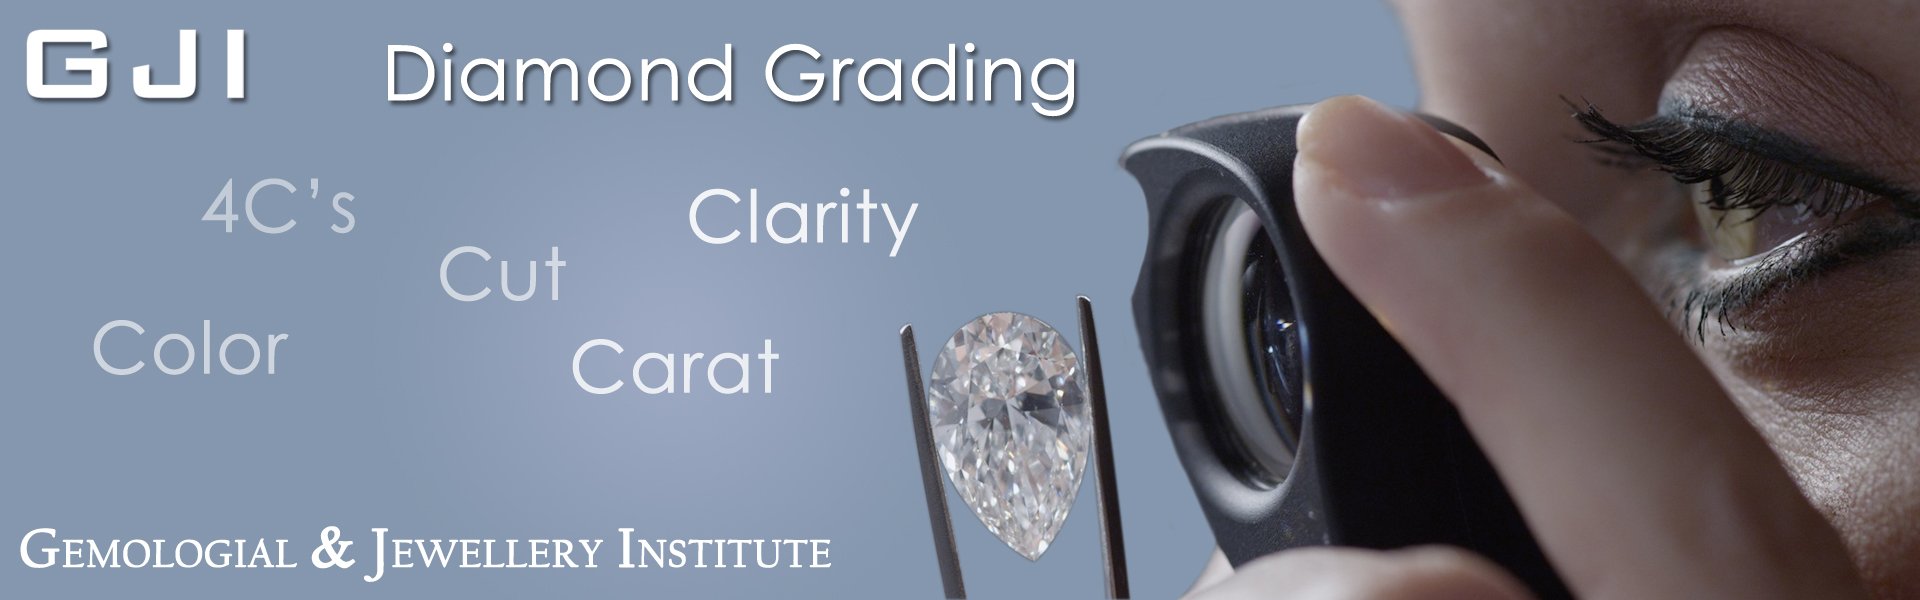 4c's of diamond grading